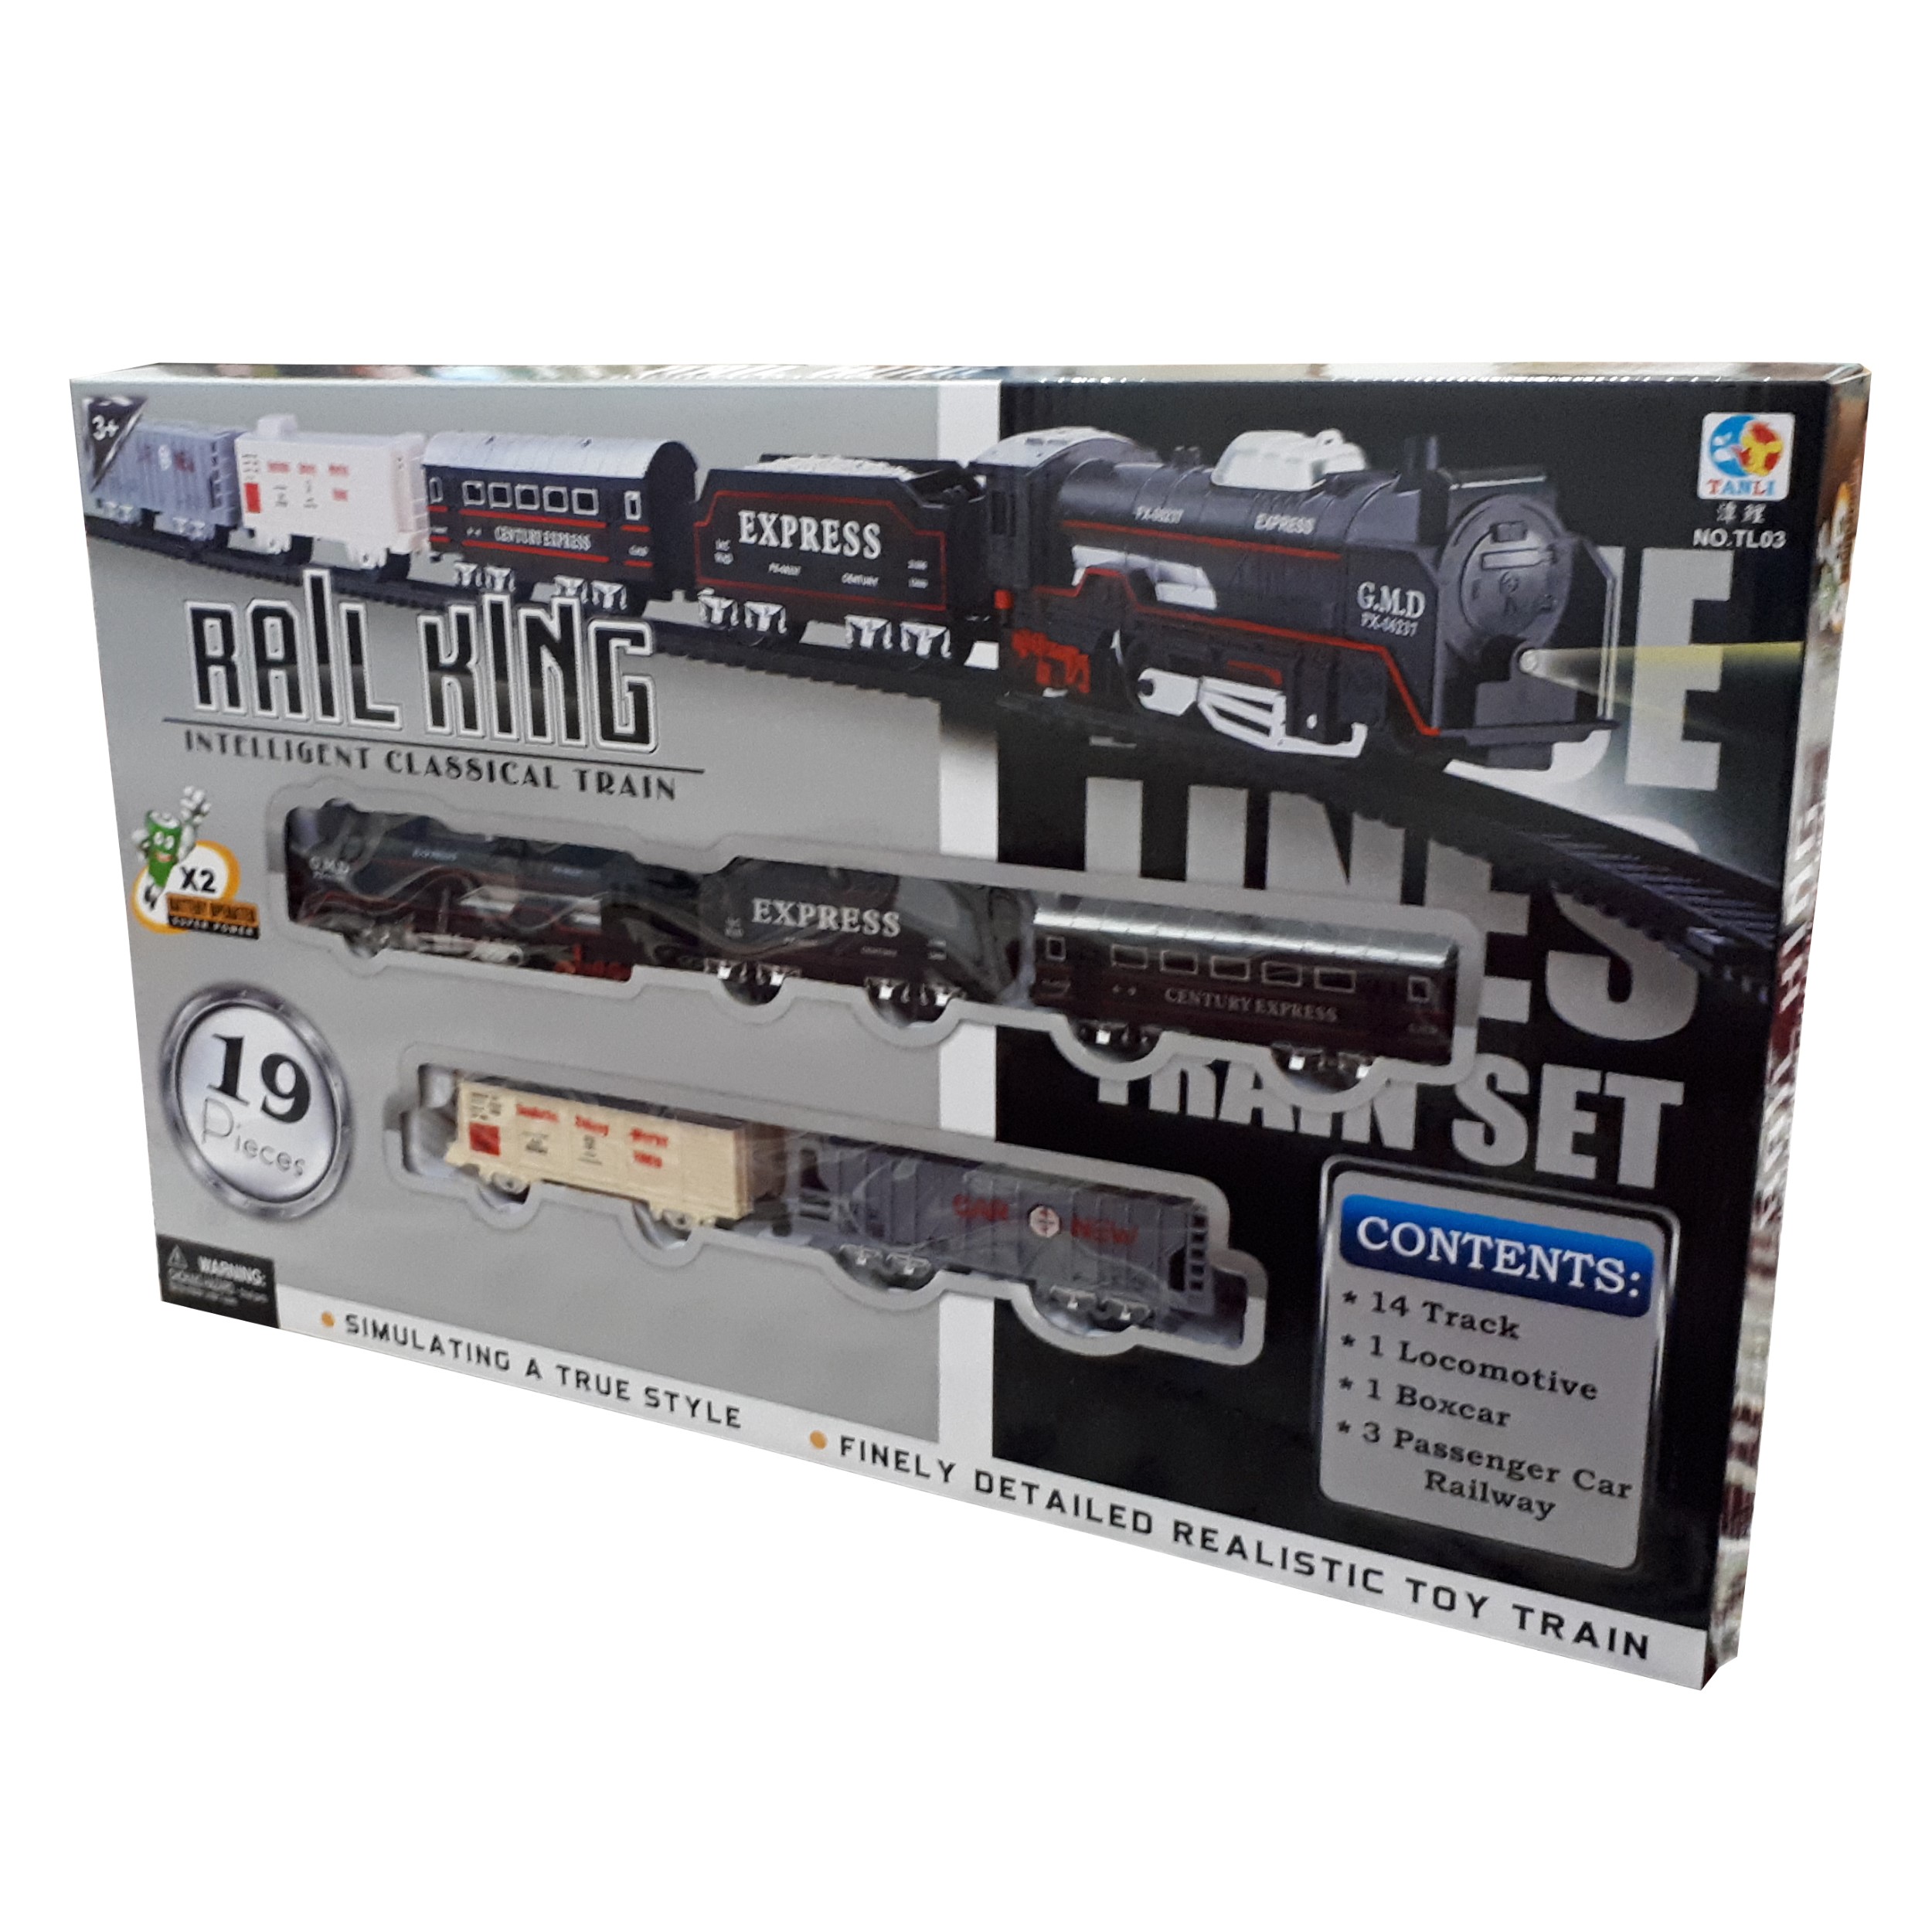 قطار بازی ریل کینگ مدل GMD کد 7890